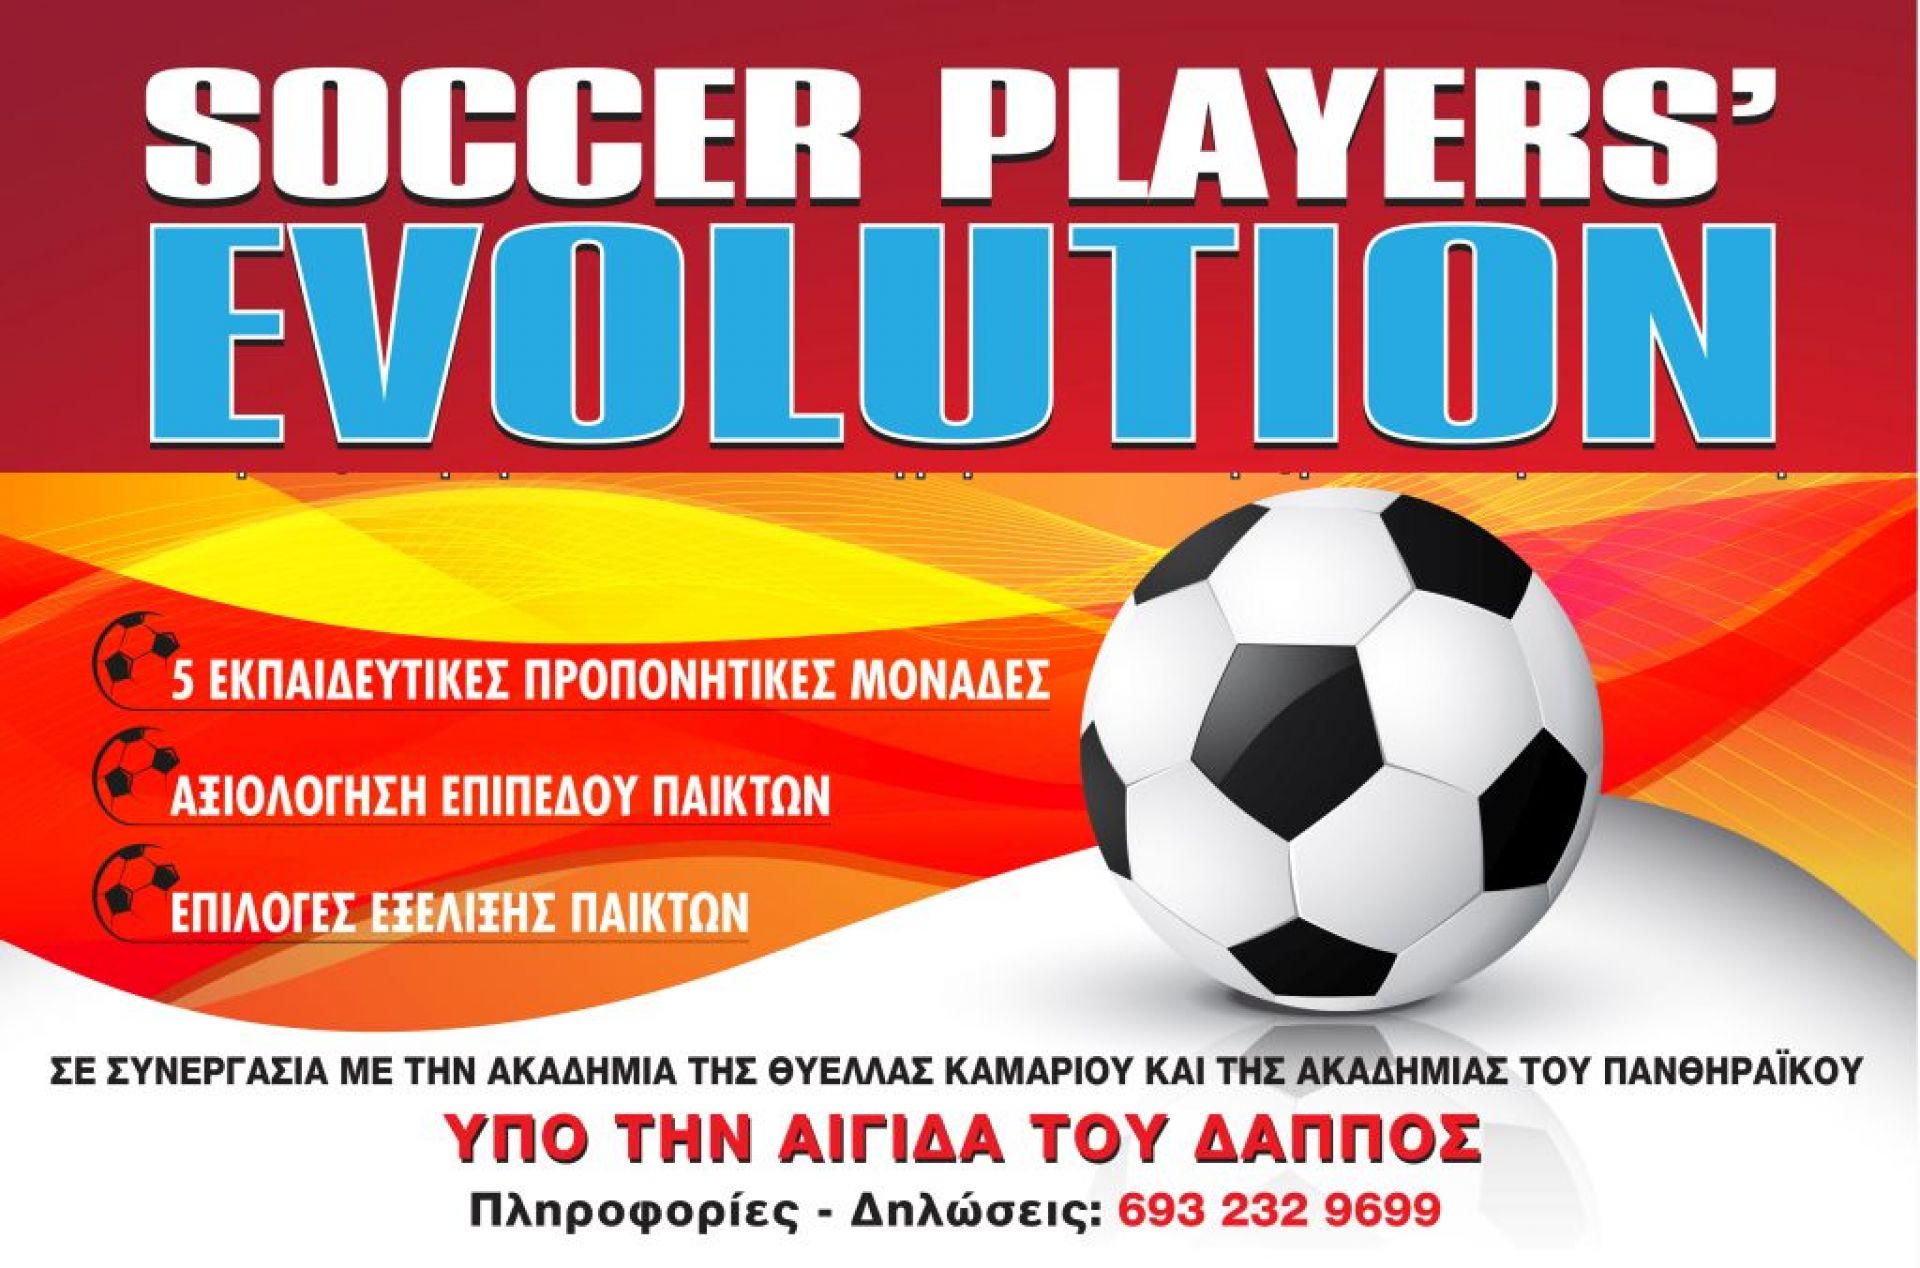 Θύελλα και Πανθηραϊκός στηρίζουν το «Soccer Player Evolution&#039;&#039;, αλλαγή στην ημερομηνία